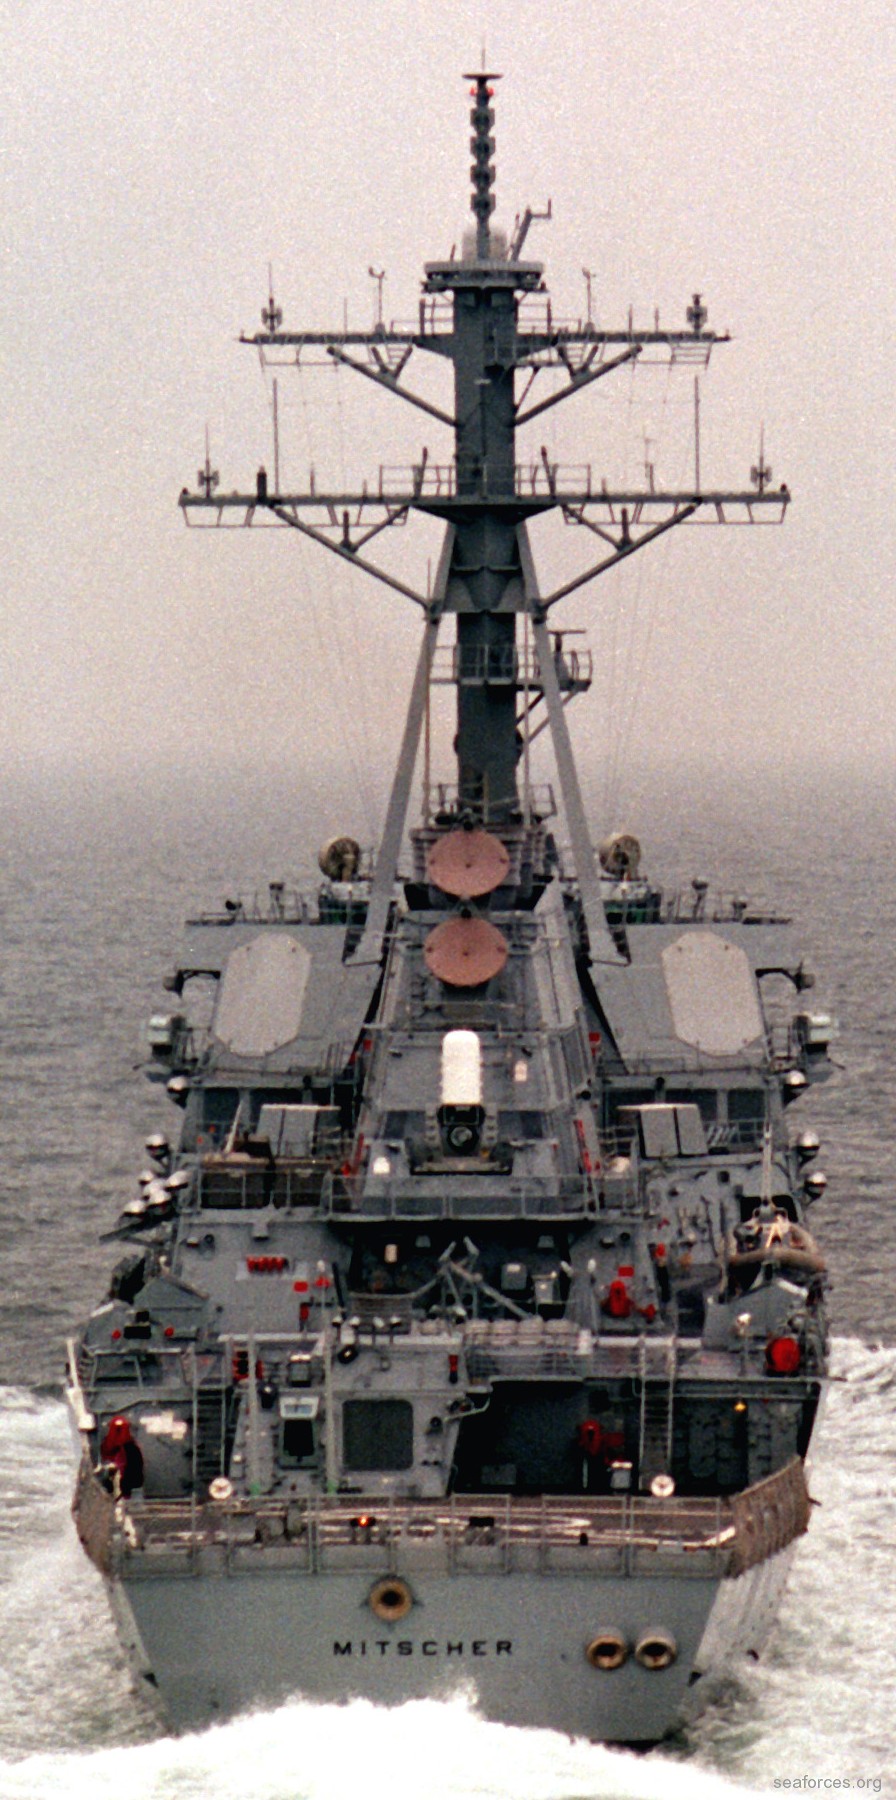 ddg-57 uss mitscher guided missile destroyer us navy 81